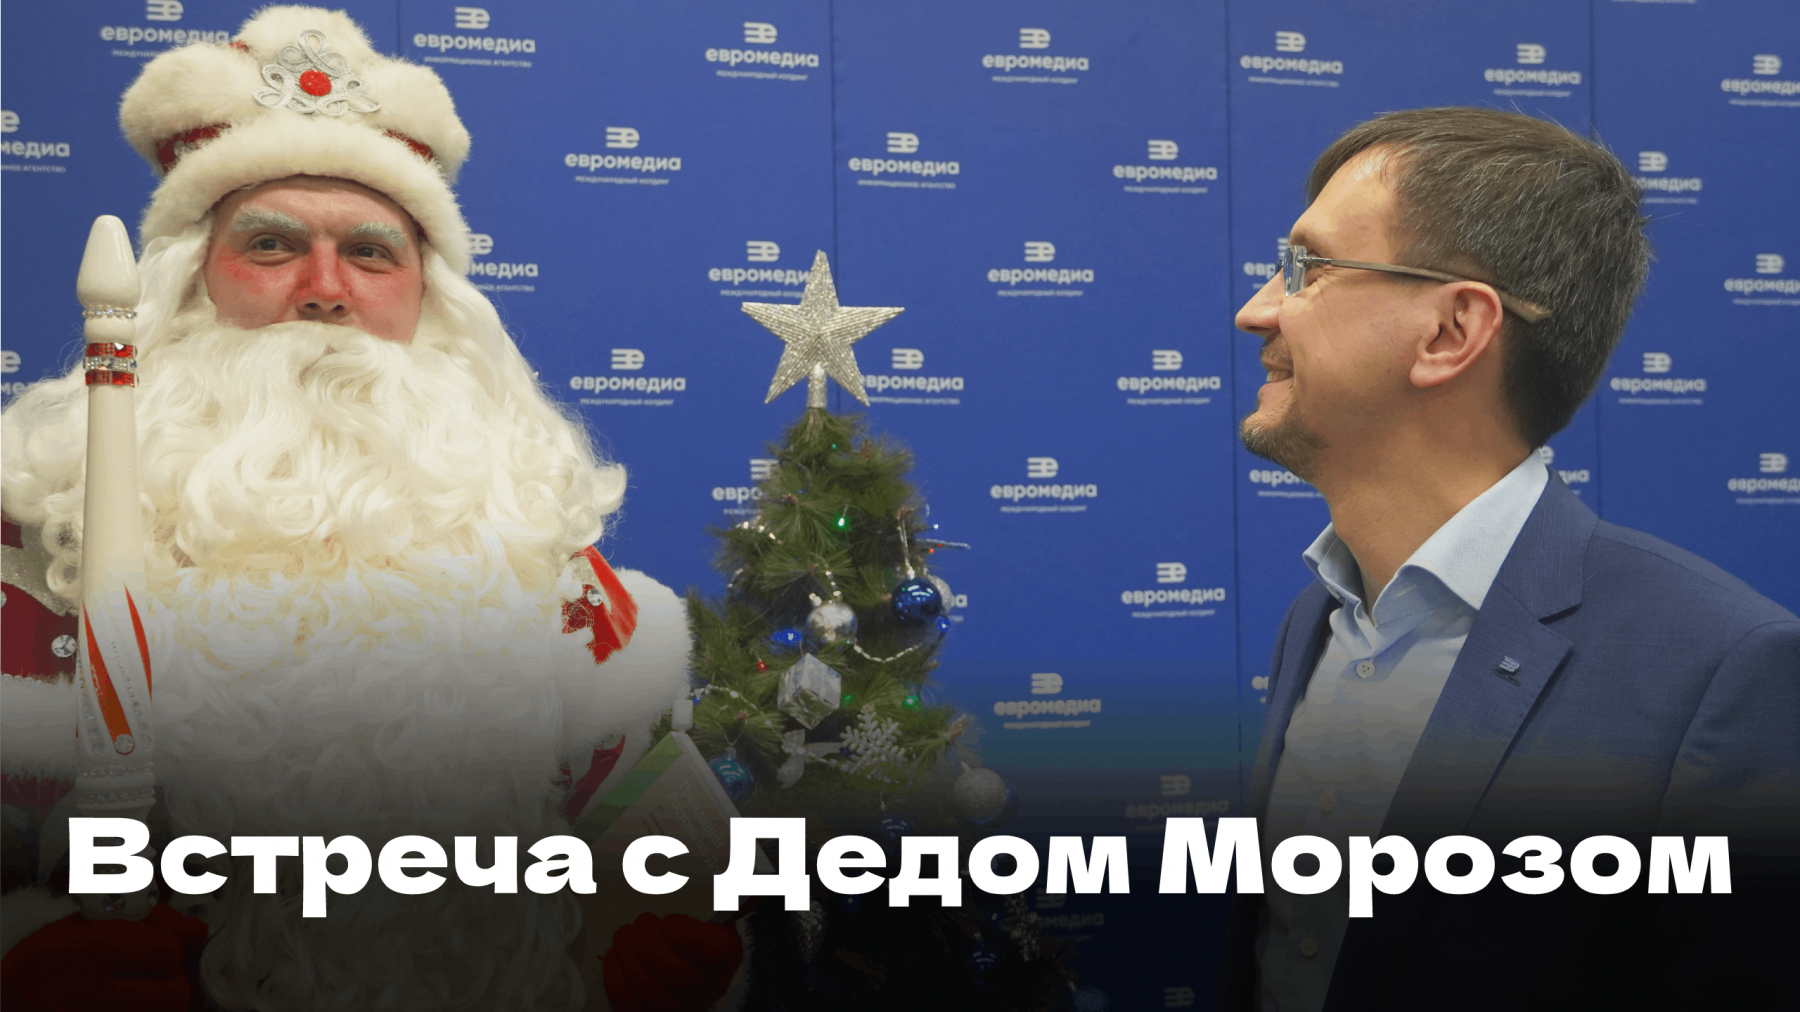 В пресс-центре холдинга «ЕвроМедиа» записали поздравление Деда Мороза